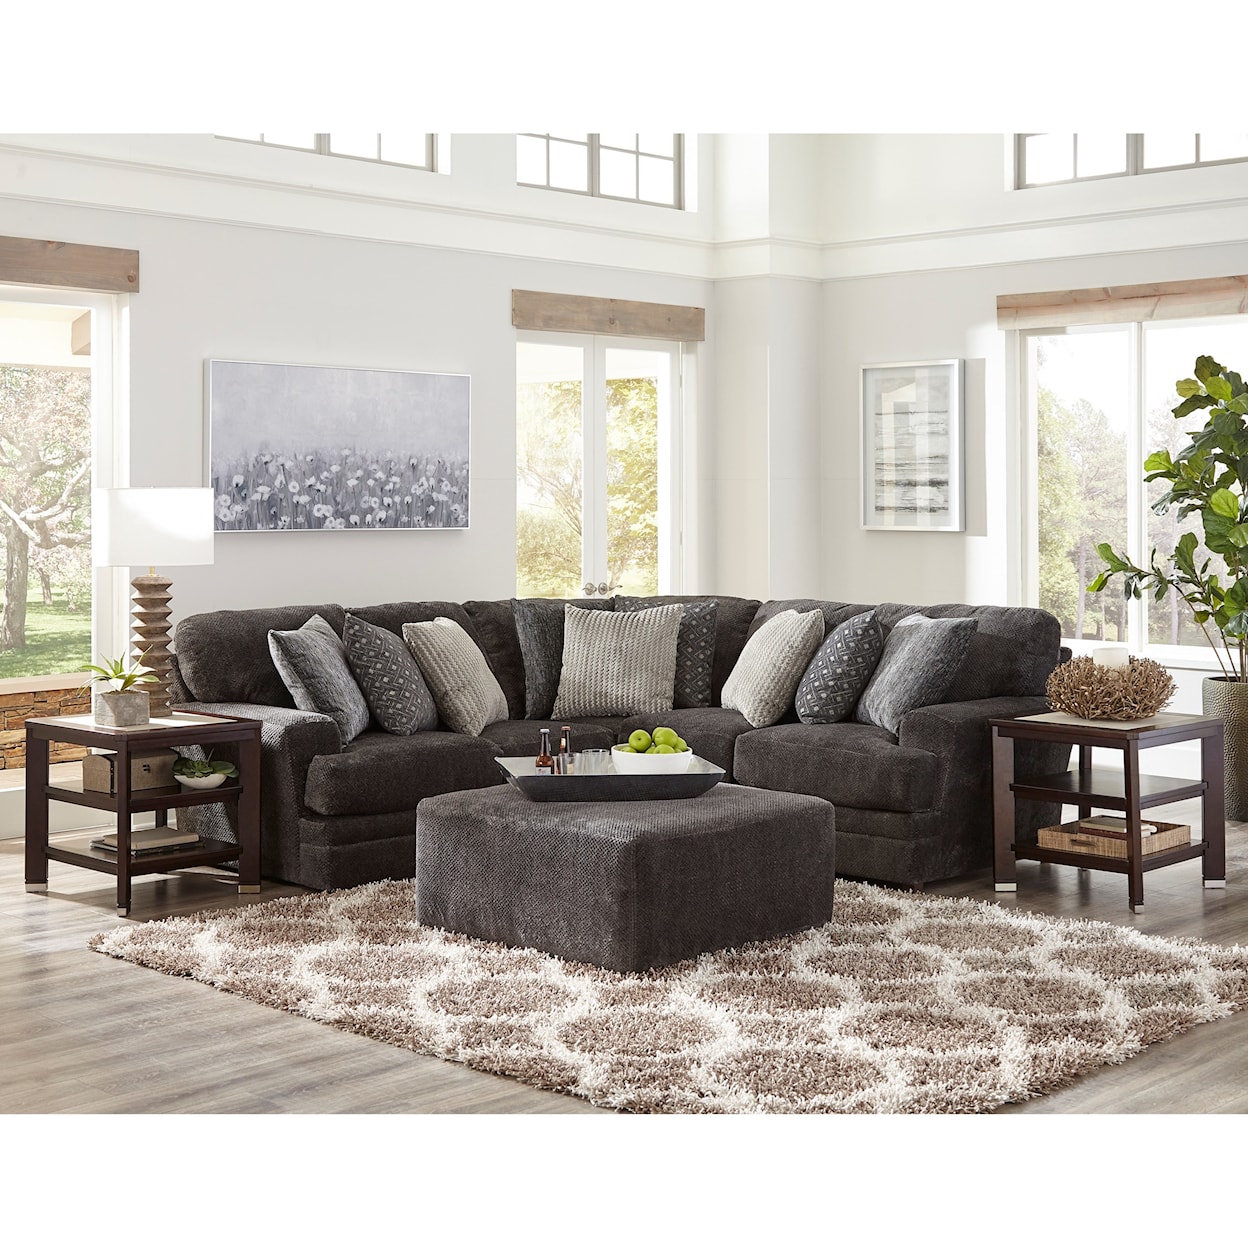 Carolina Furniture 4376 Mammoth 2 Piece Sectional